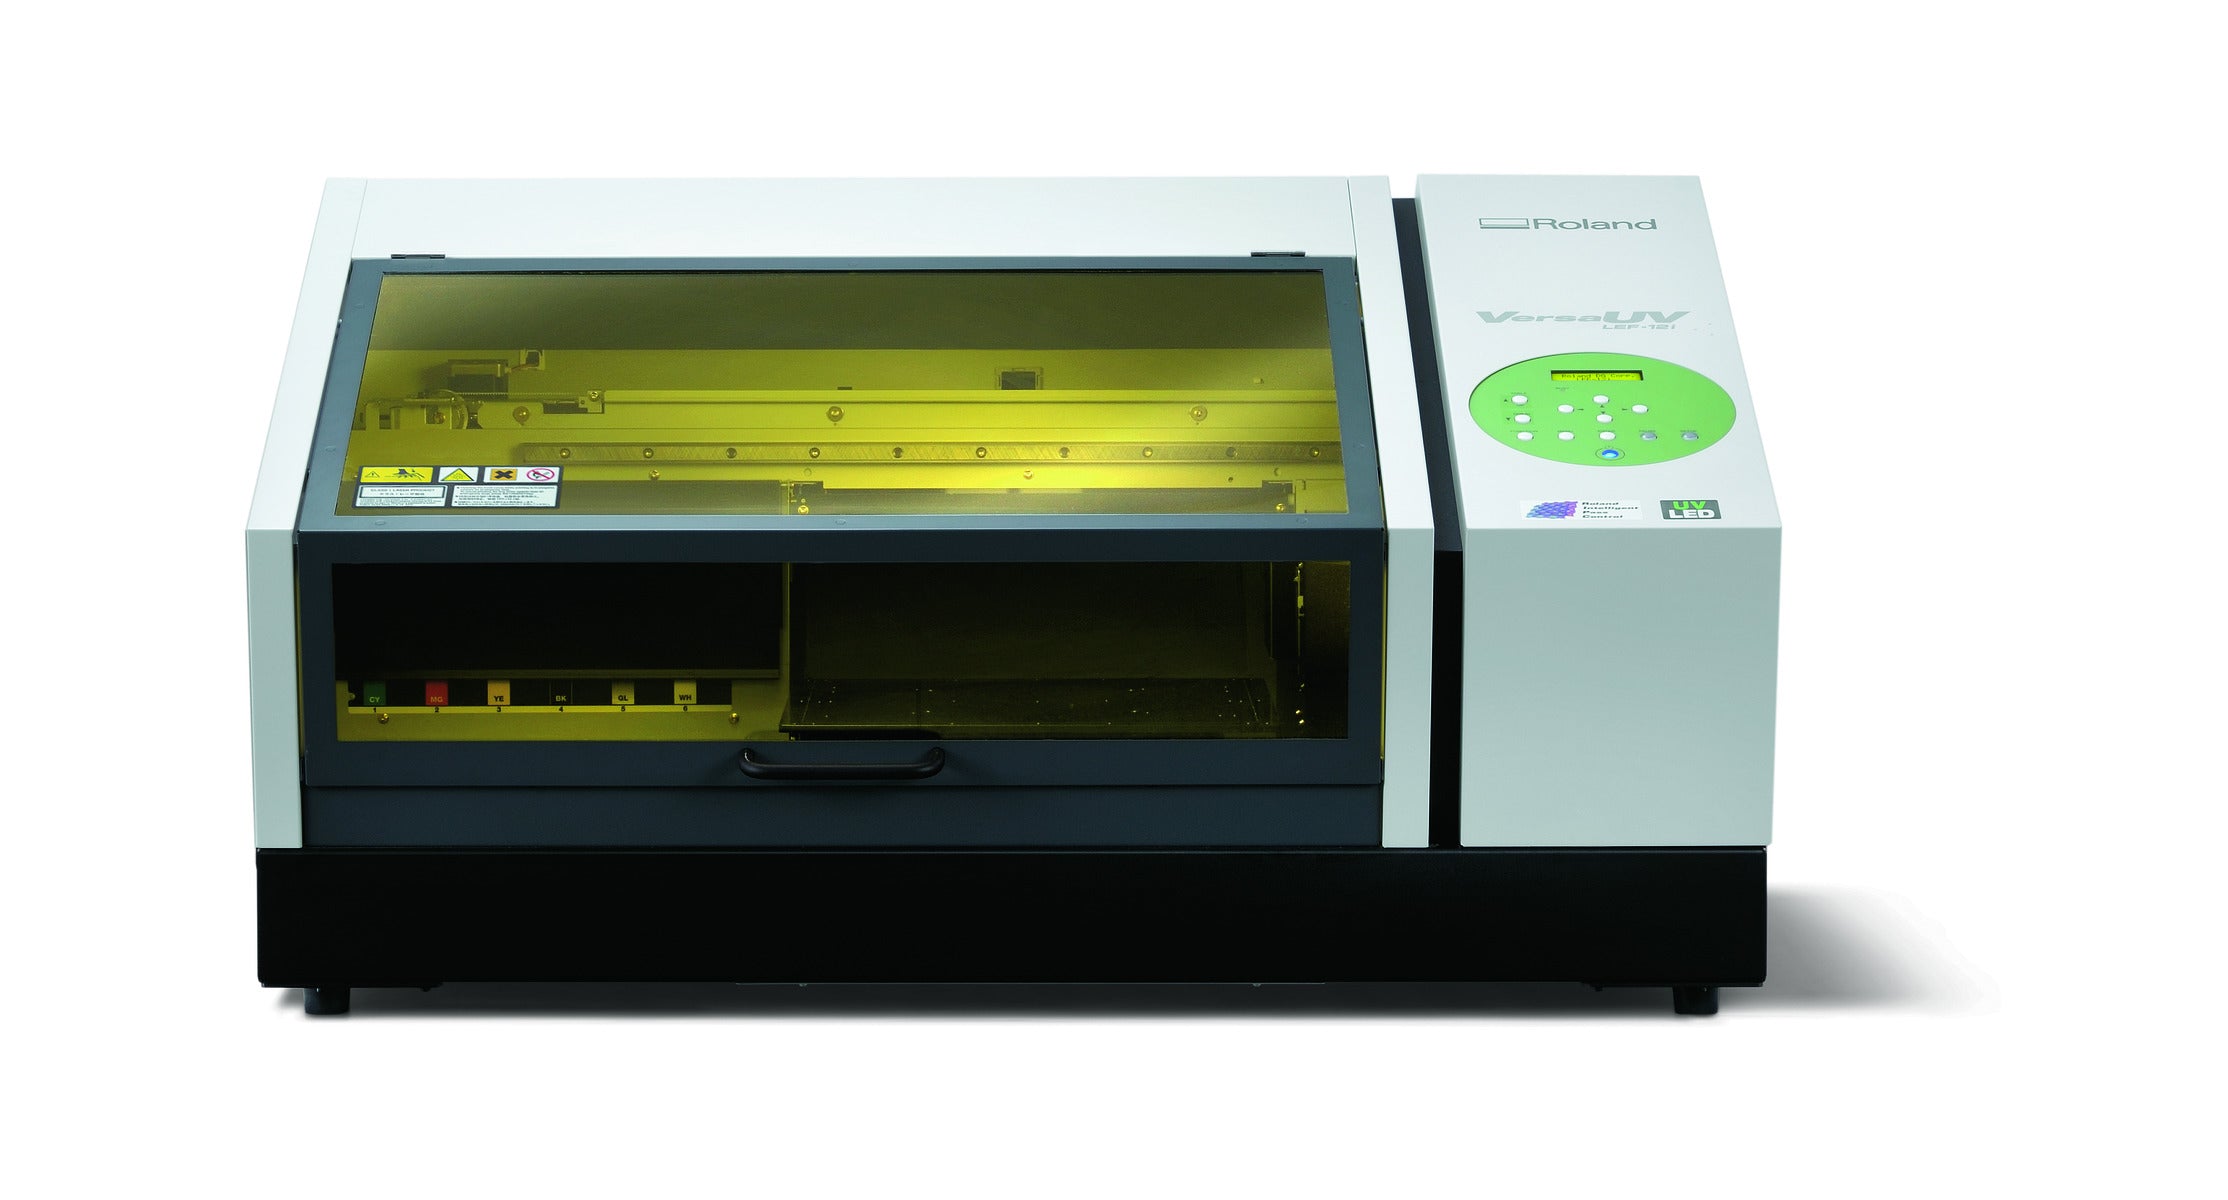 lef12i roland uv printer front facing